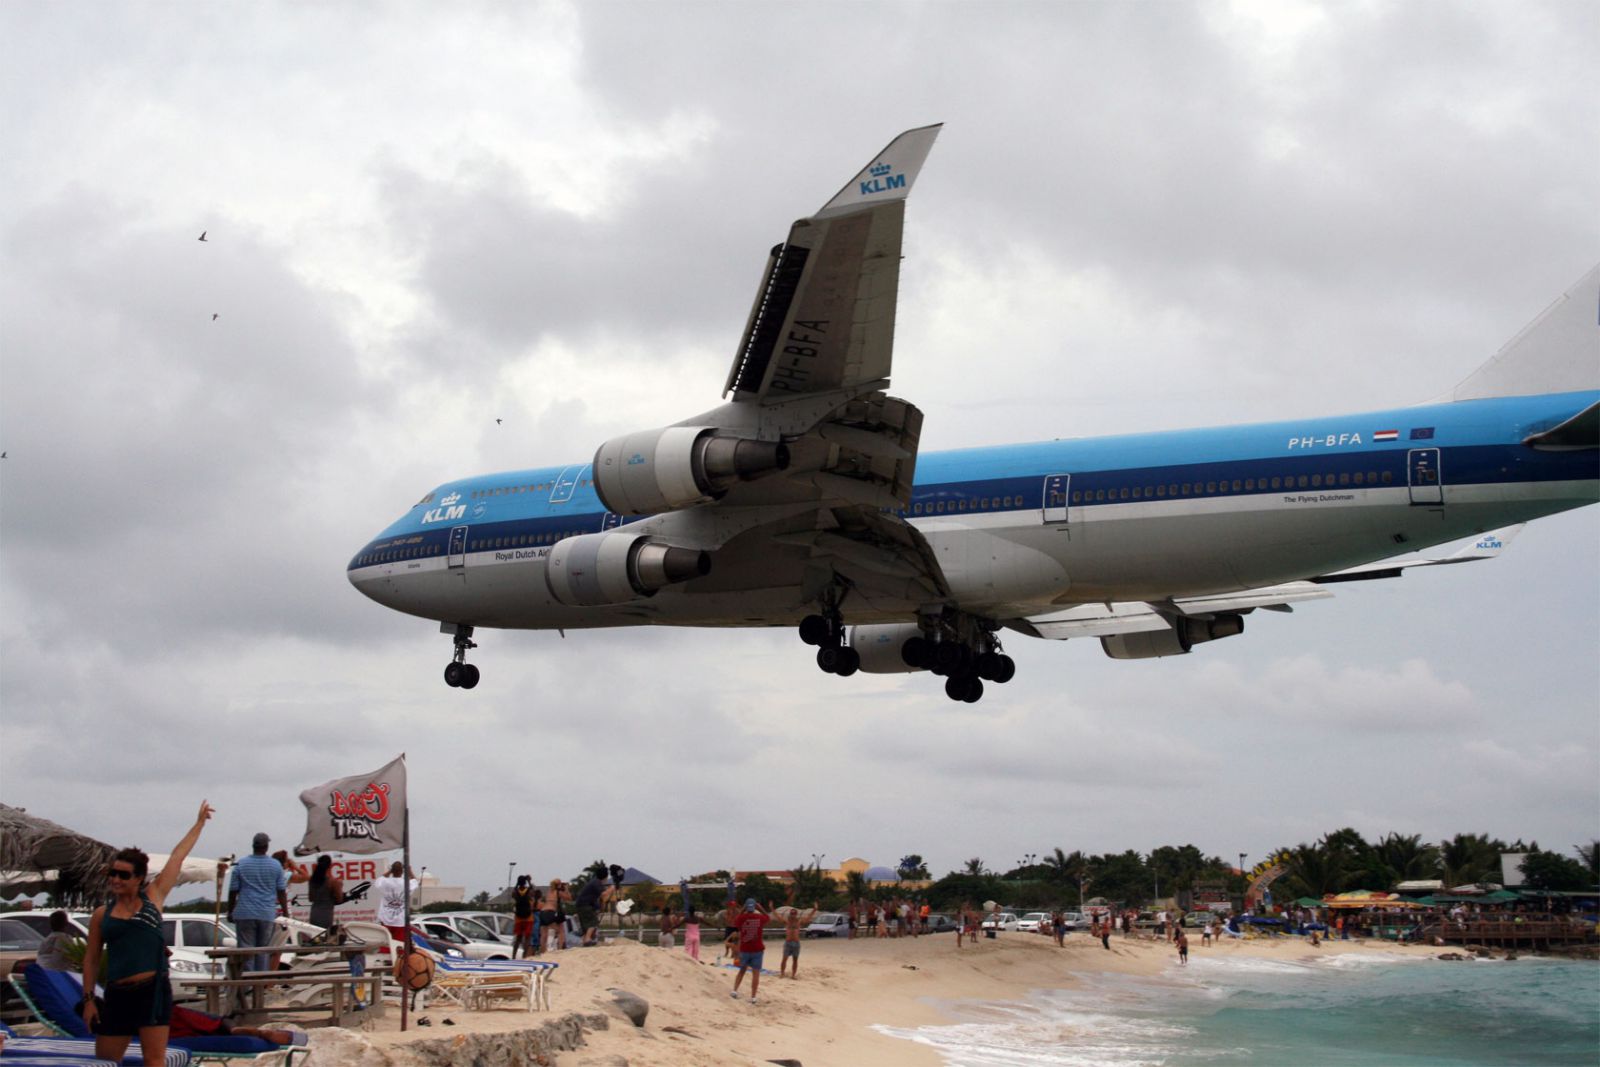 klm-747-landing-over-beach.jpg